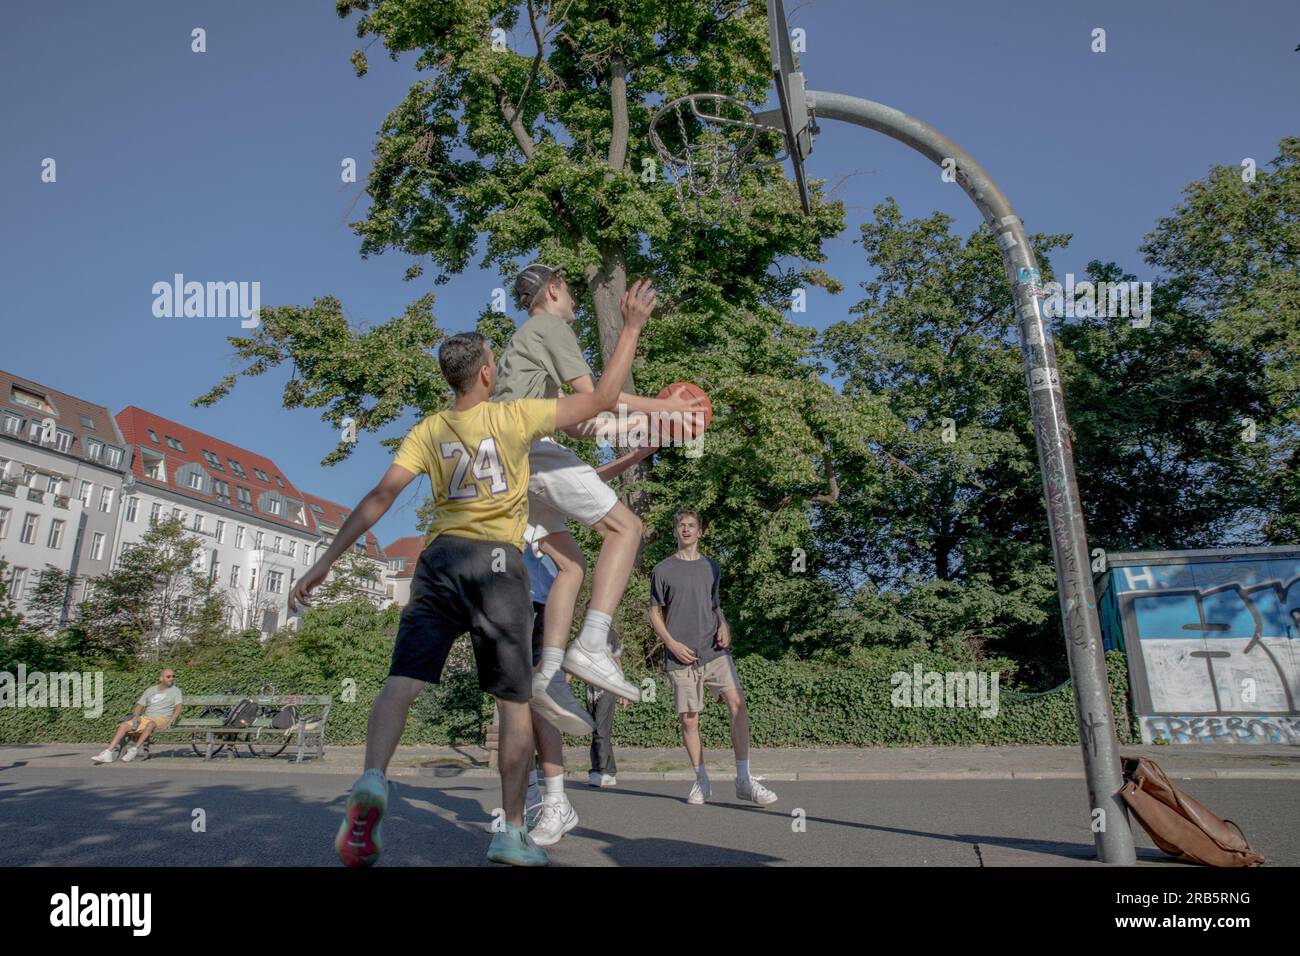 7 luglio 2023, Berlino, Germania: Nel cuore della vivace capitale tedesca, Berlino, in questo soleggiato 7 luglio 2023, i campi da basket della città sono diventati un centro di attività, riecheggiando con i ritmici cervelloni di pallacanestro dribbling e i gioiosi applausi degli spettatori. Adolescenti provenienti da diversi background sono stati riuniti qui, uniti dal loro amore condiviso per il gioco e dal desiderio di eccellere. Con una crescente attenzione ai programmi di sviluppo giovanile, la città riconosce il ruolo cruciale dello sport nel coltivare il talento, costruire il carattere e promuovere la coesione sociale. I tribunali di Berlino diventano spazi dove i giovani possono Foto Stock